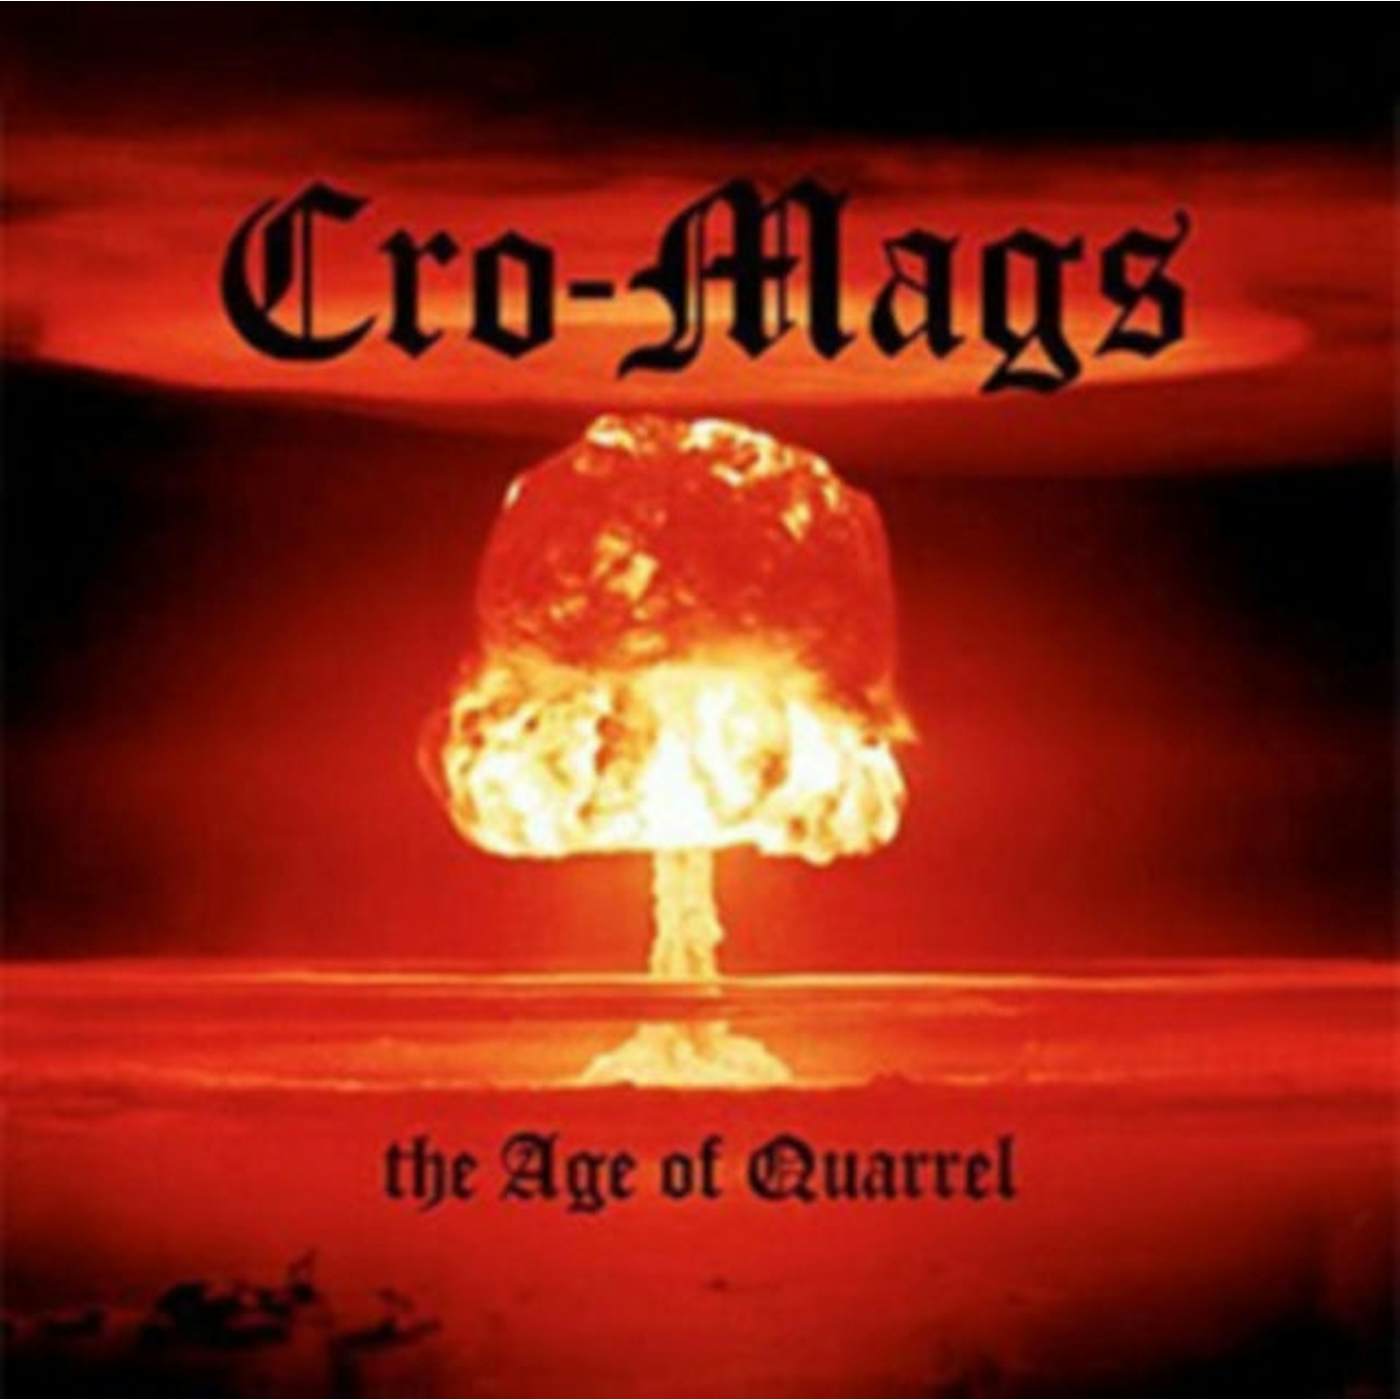 Cro-Mags LP - Age Of Quarrel The (Lp) (Vinyl)